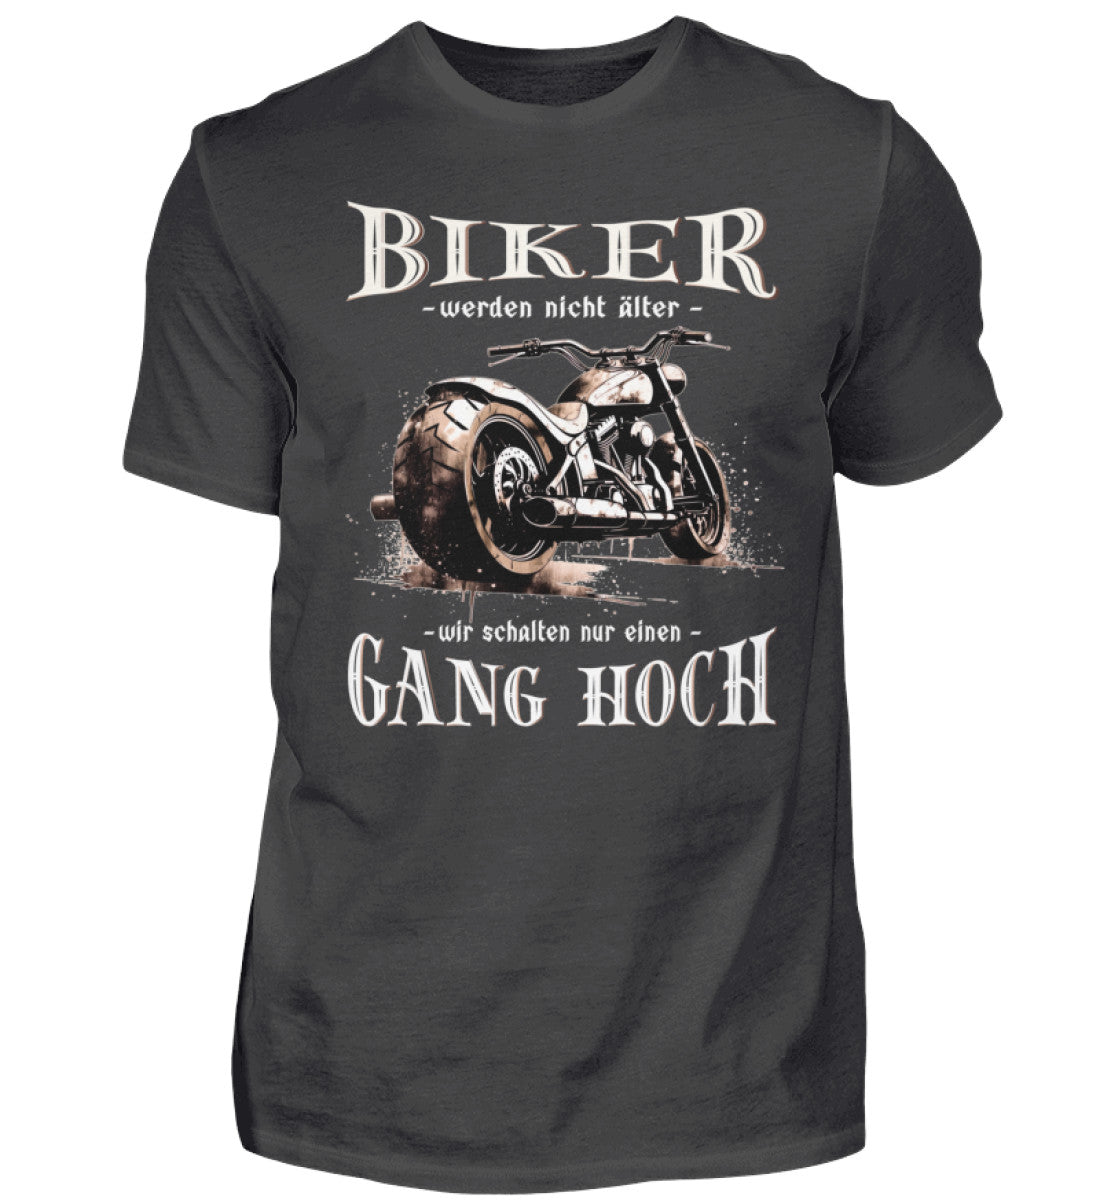 Ein Biker T-Shirt für Motorradfahrer von Wingbikers mit dem Aufdruck, Biker werden nicht älter - Wir schalten nur einen Gang hoch! - in dunkelgrau.